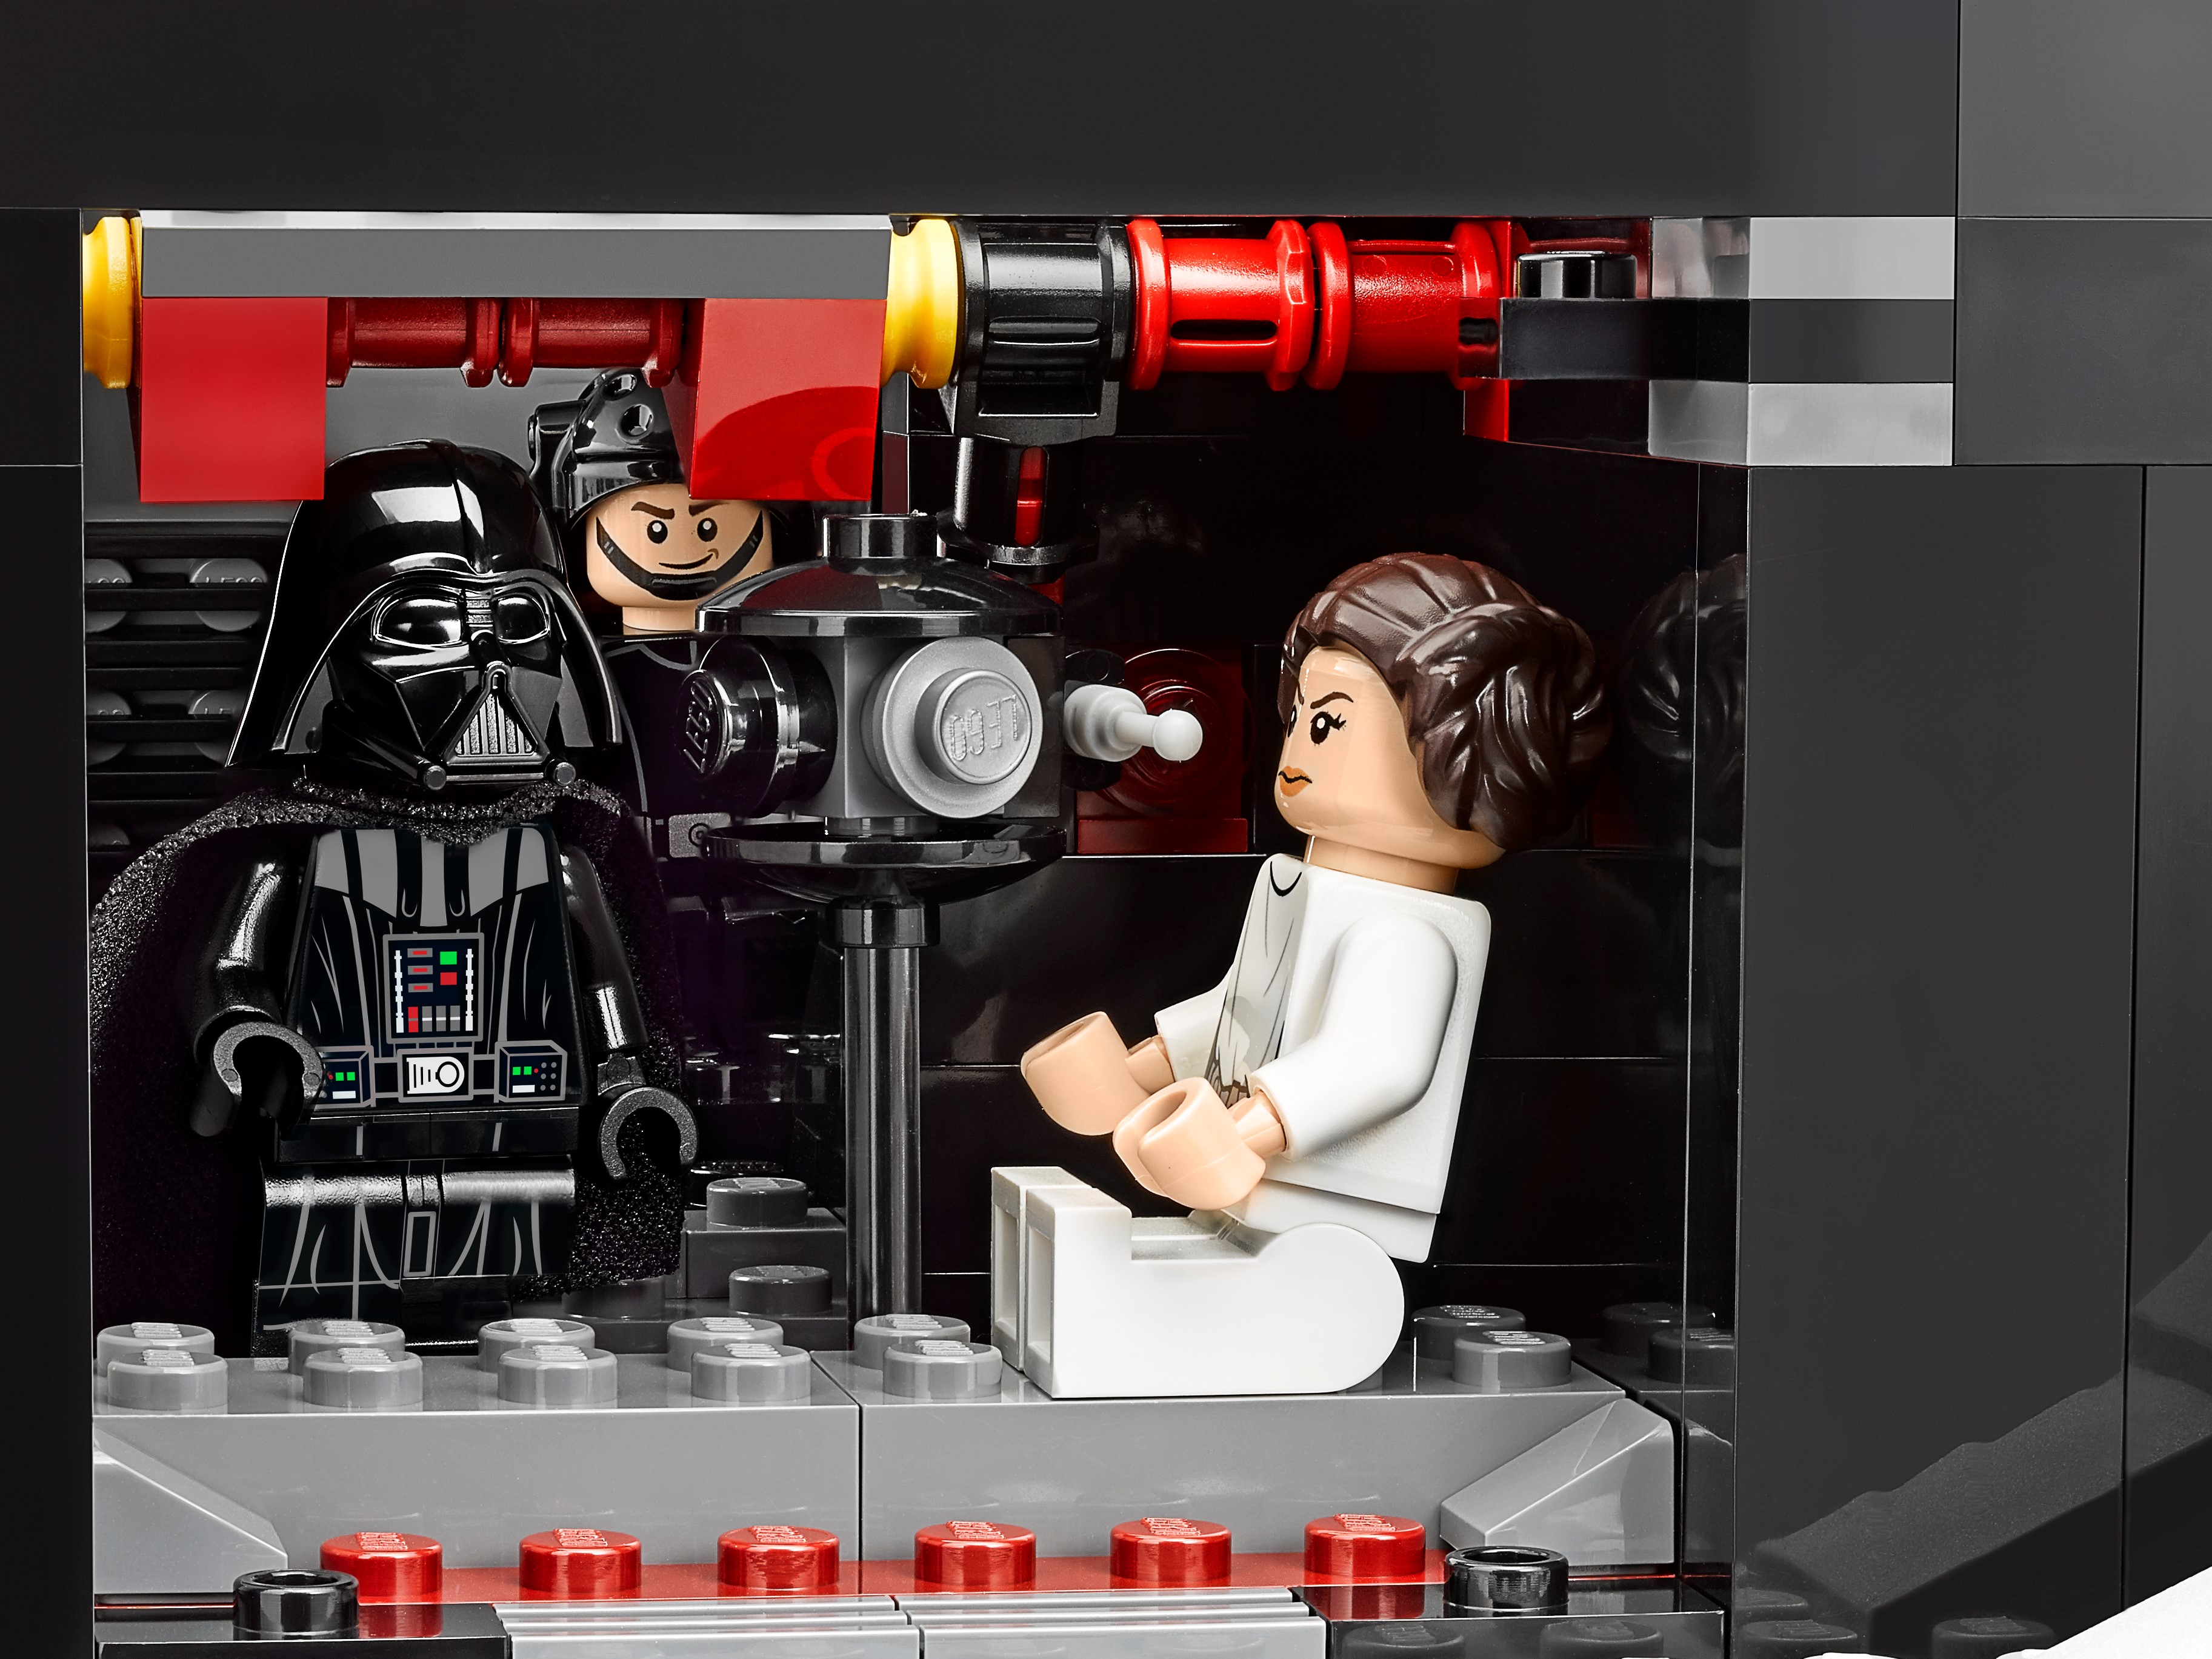 LEGO® 75159 Star Wars™: L'Étoile Noire™ - Jeux et jouets LEGO ® - Avenue  des Jeux